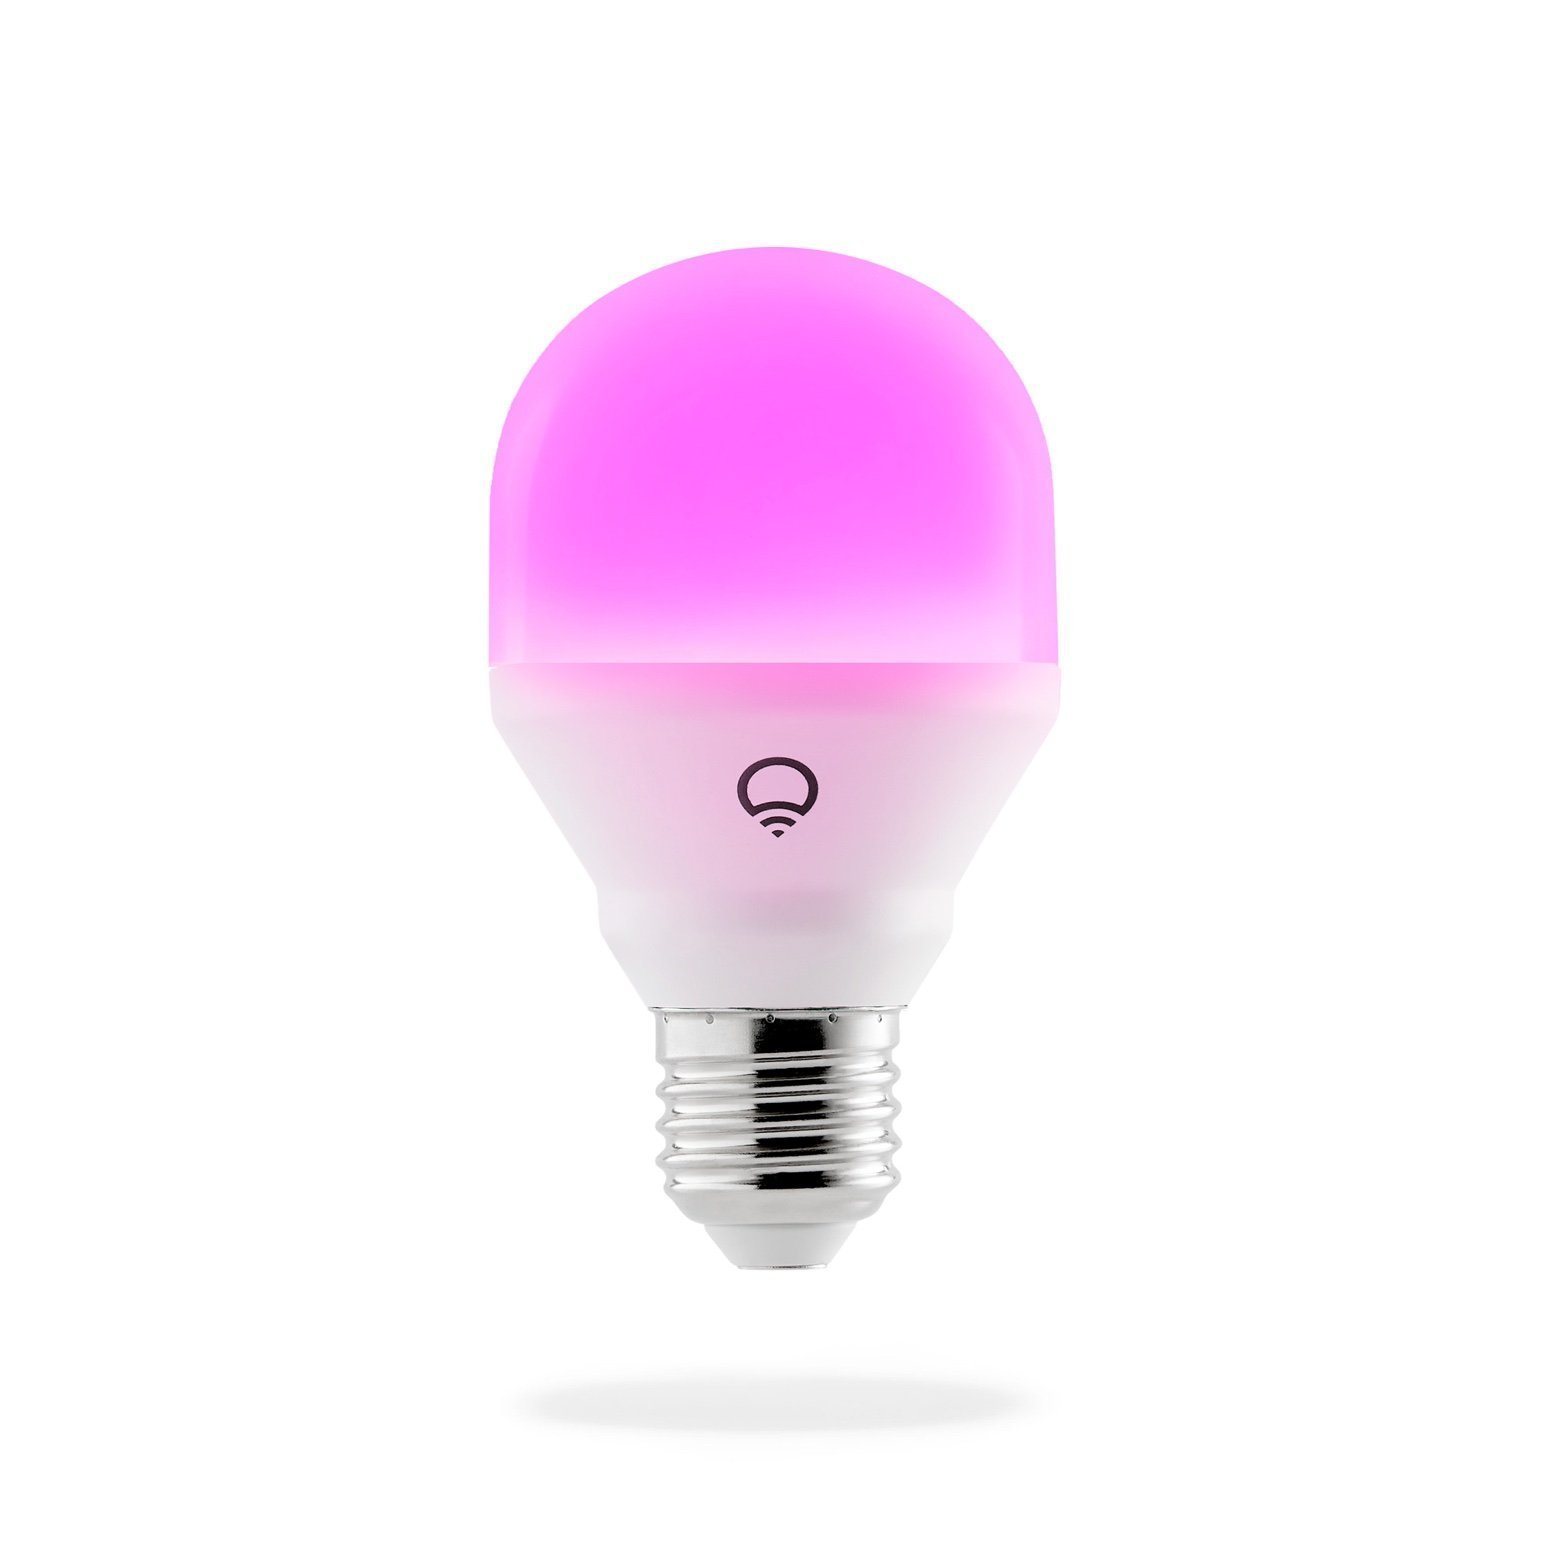 LIFX Mini lightbulb emitting a violet light